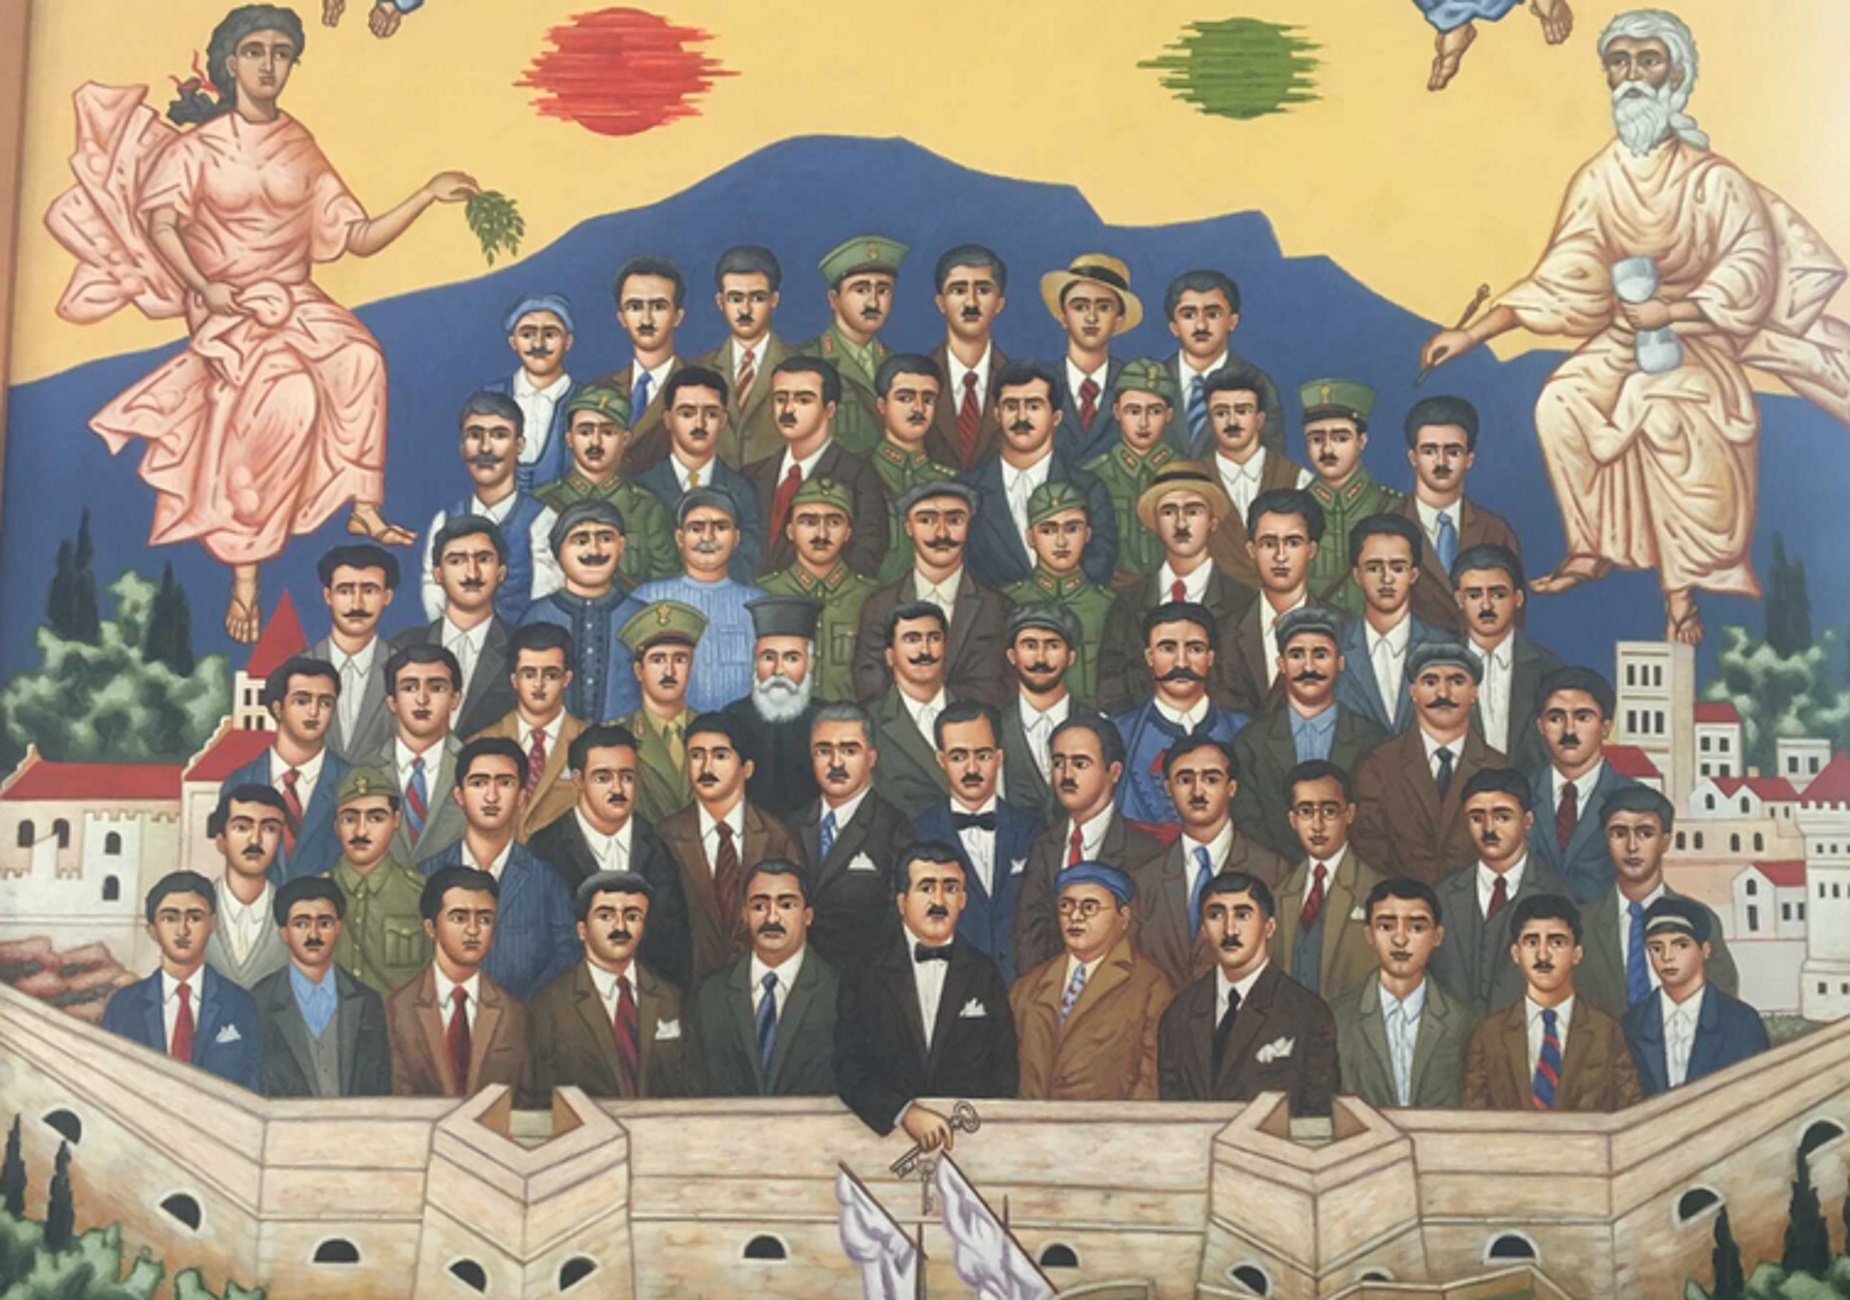 Ηράκλειο: Ο πίνακας για τους 62 μάρτυρες και η πονεμένη ιστορία που κρύβει